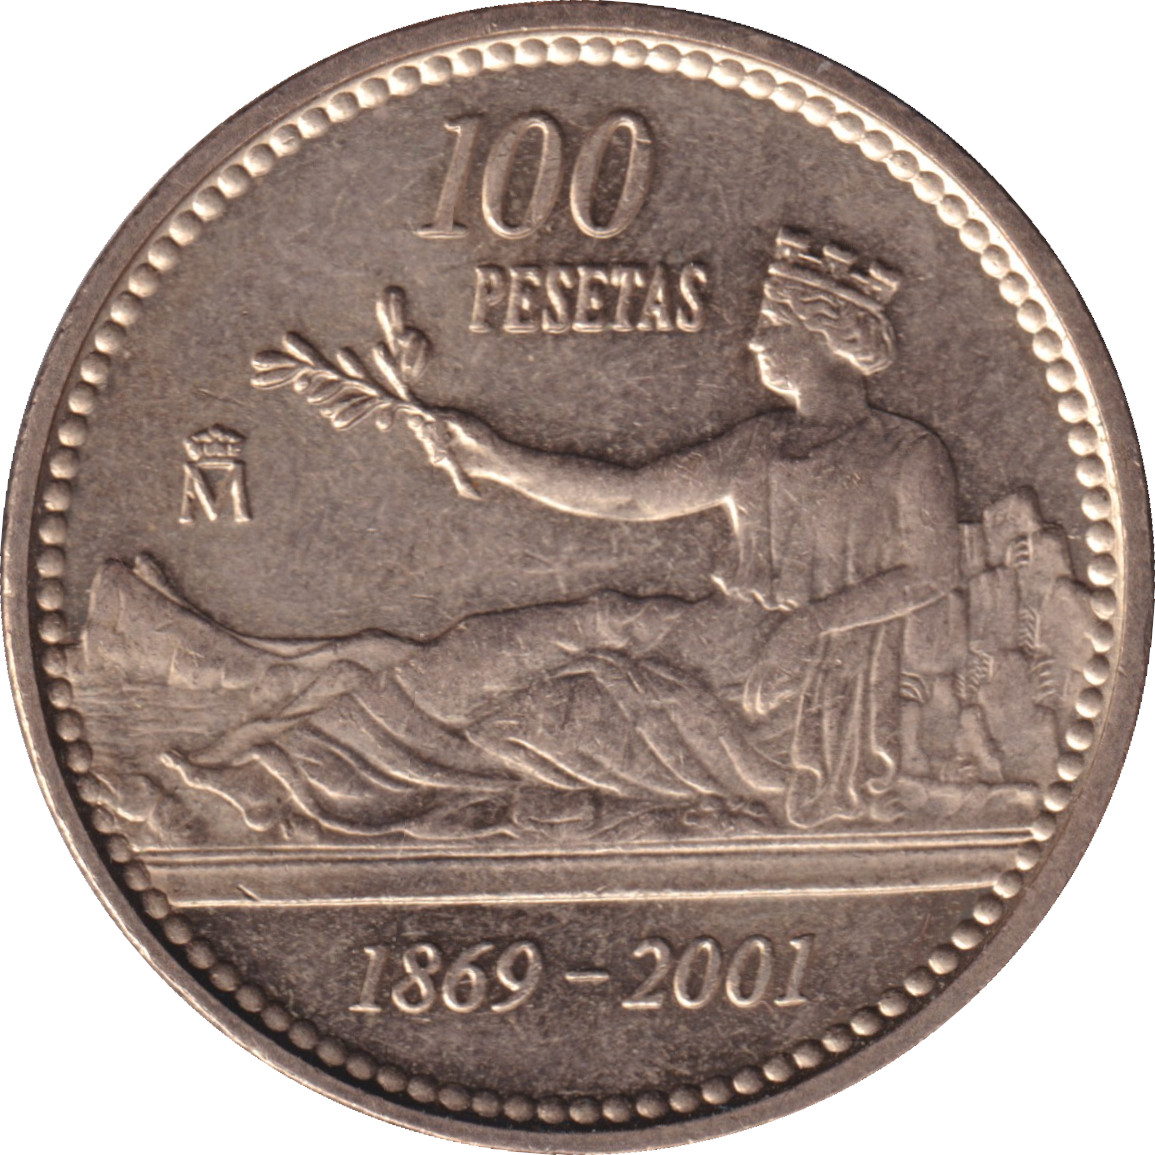 100 pesetas - Fin de la Peseta